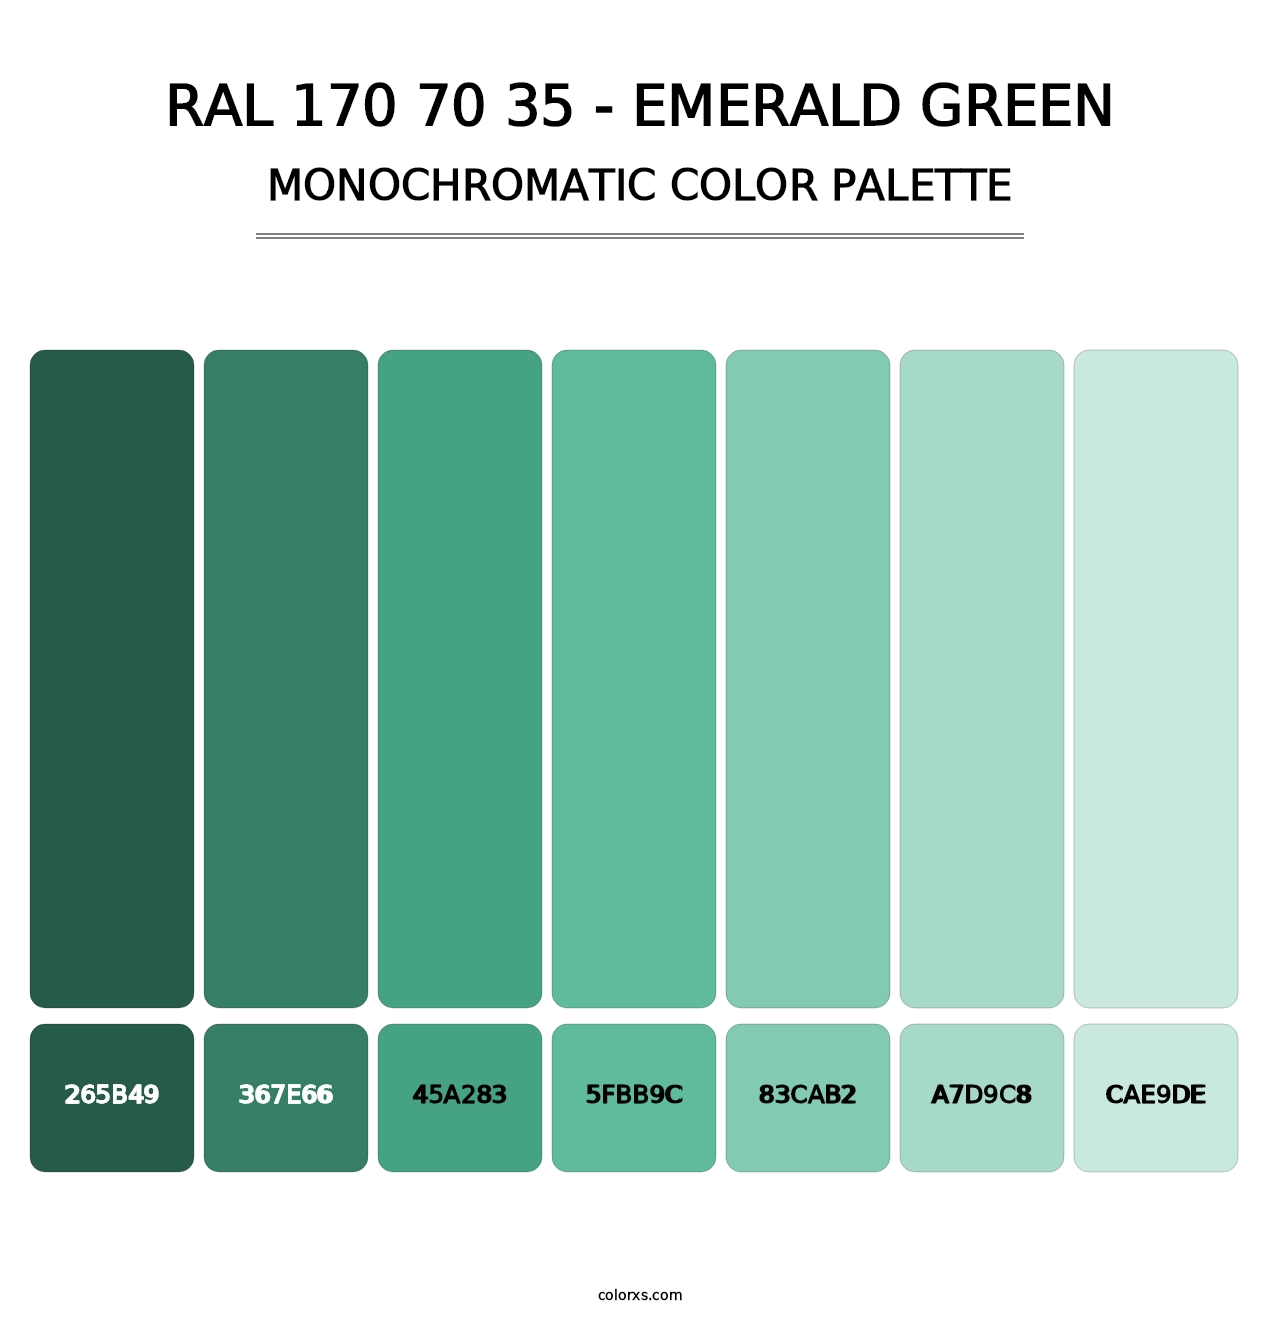 RAL 170 70 35 - Emerald Green - Monochromatic Color Palette